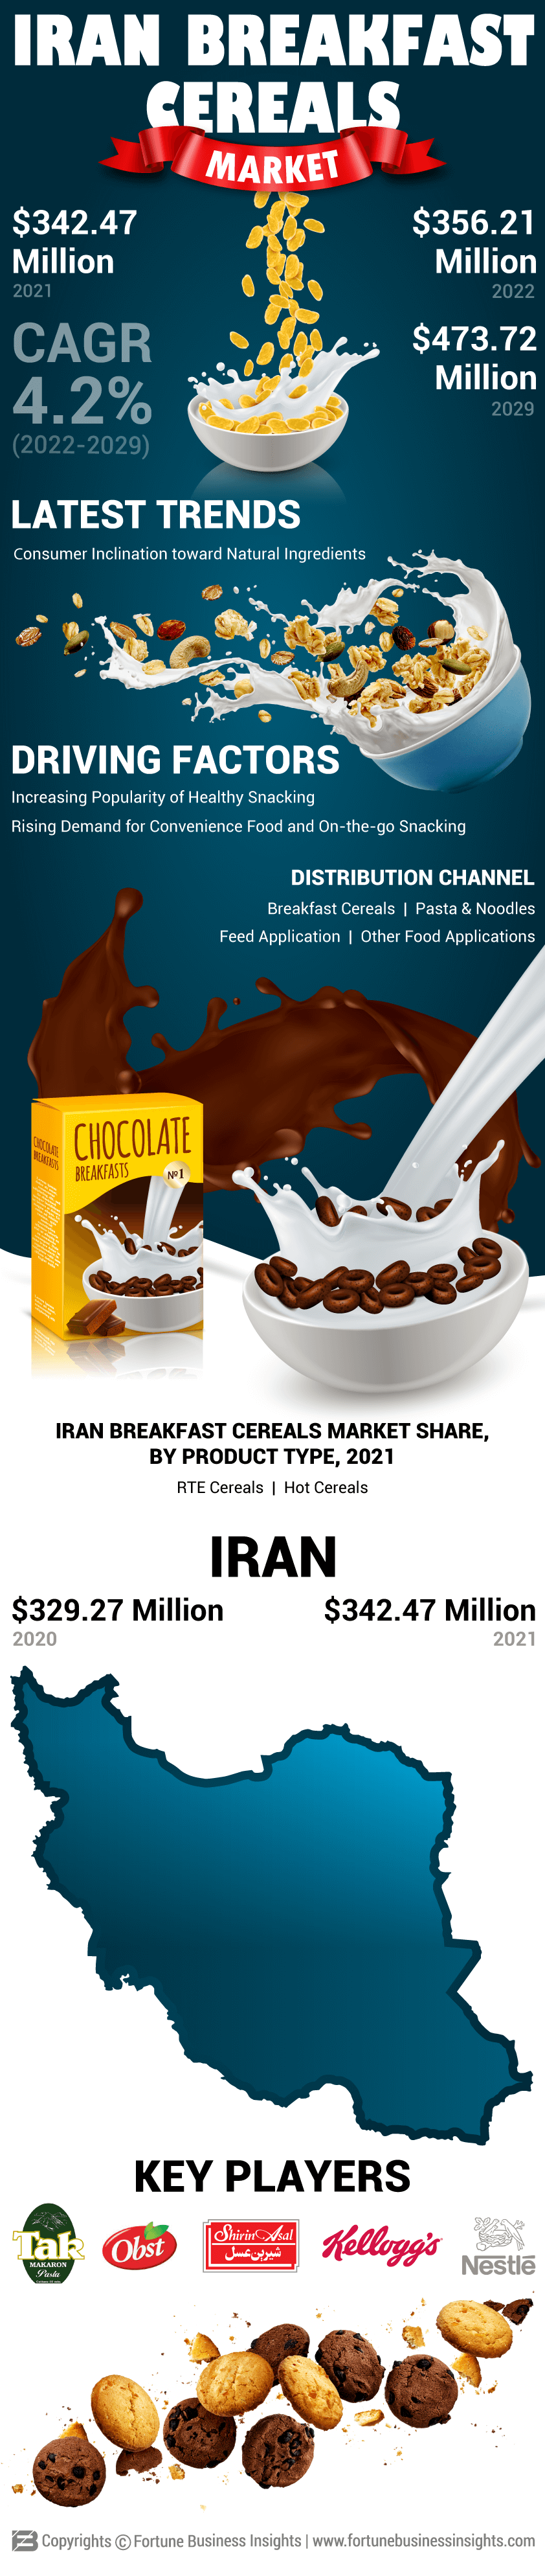 Iran Breakfast Cereals Market